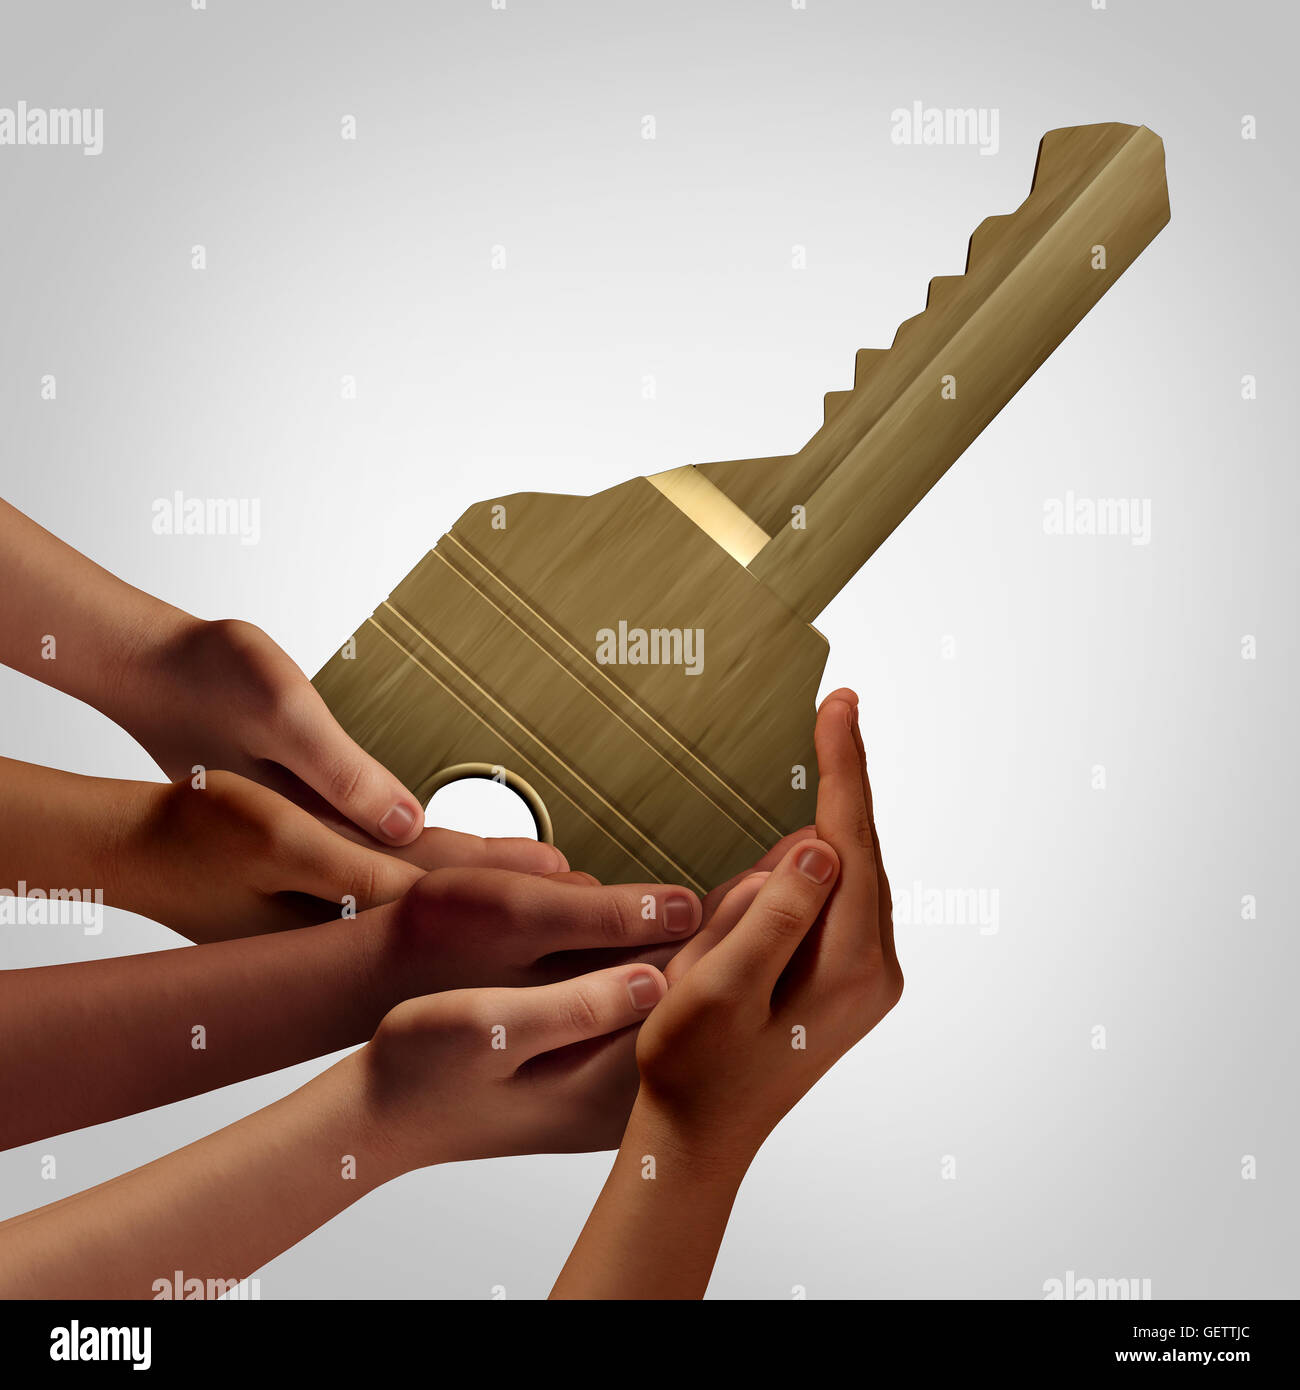 Personen Gruppe Schlüsselzugriff Konzept vielfältige Hände halten ein Objekt, das als Teamarbeit Lösung Metapher entsperrt oder Zugänglichkeit Symbol mit 3D Abbildung Elemente ermöglicht. Stockfoto